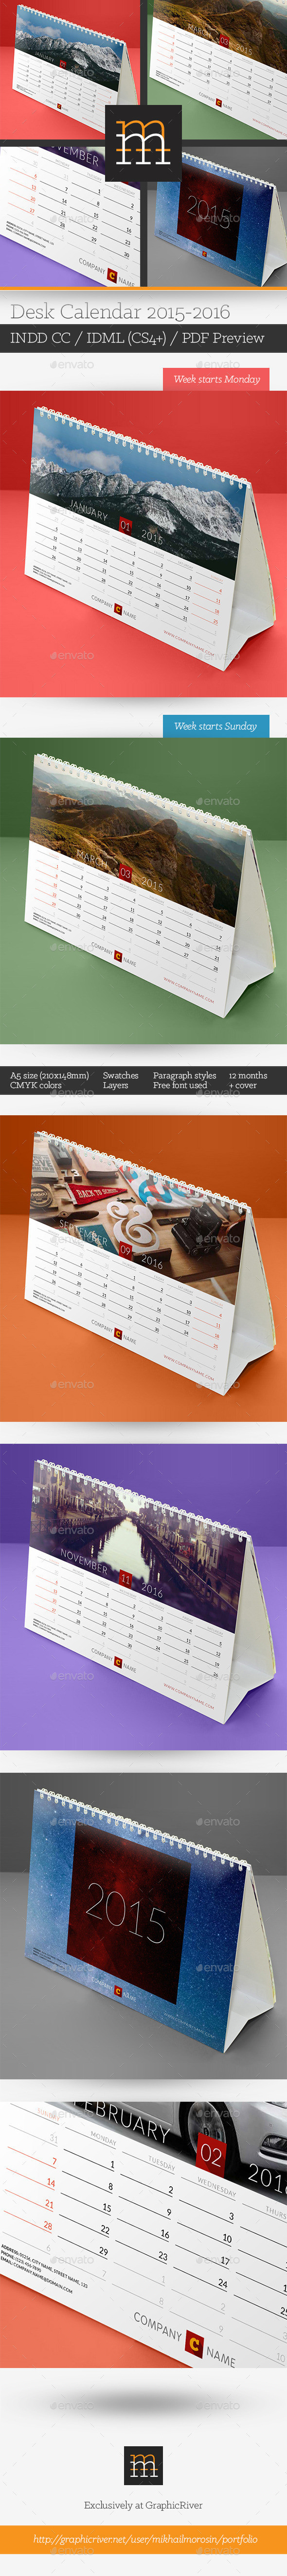 Desk calendar 09  2015 590